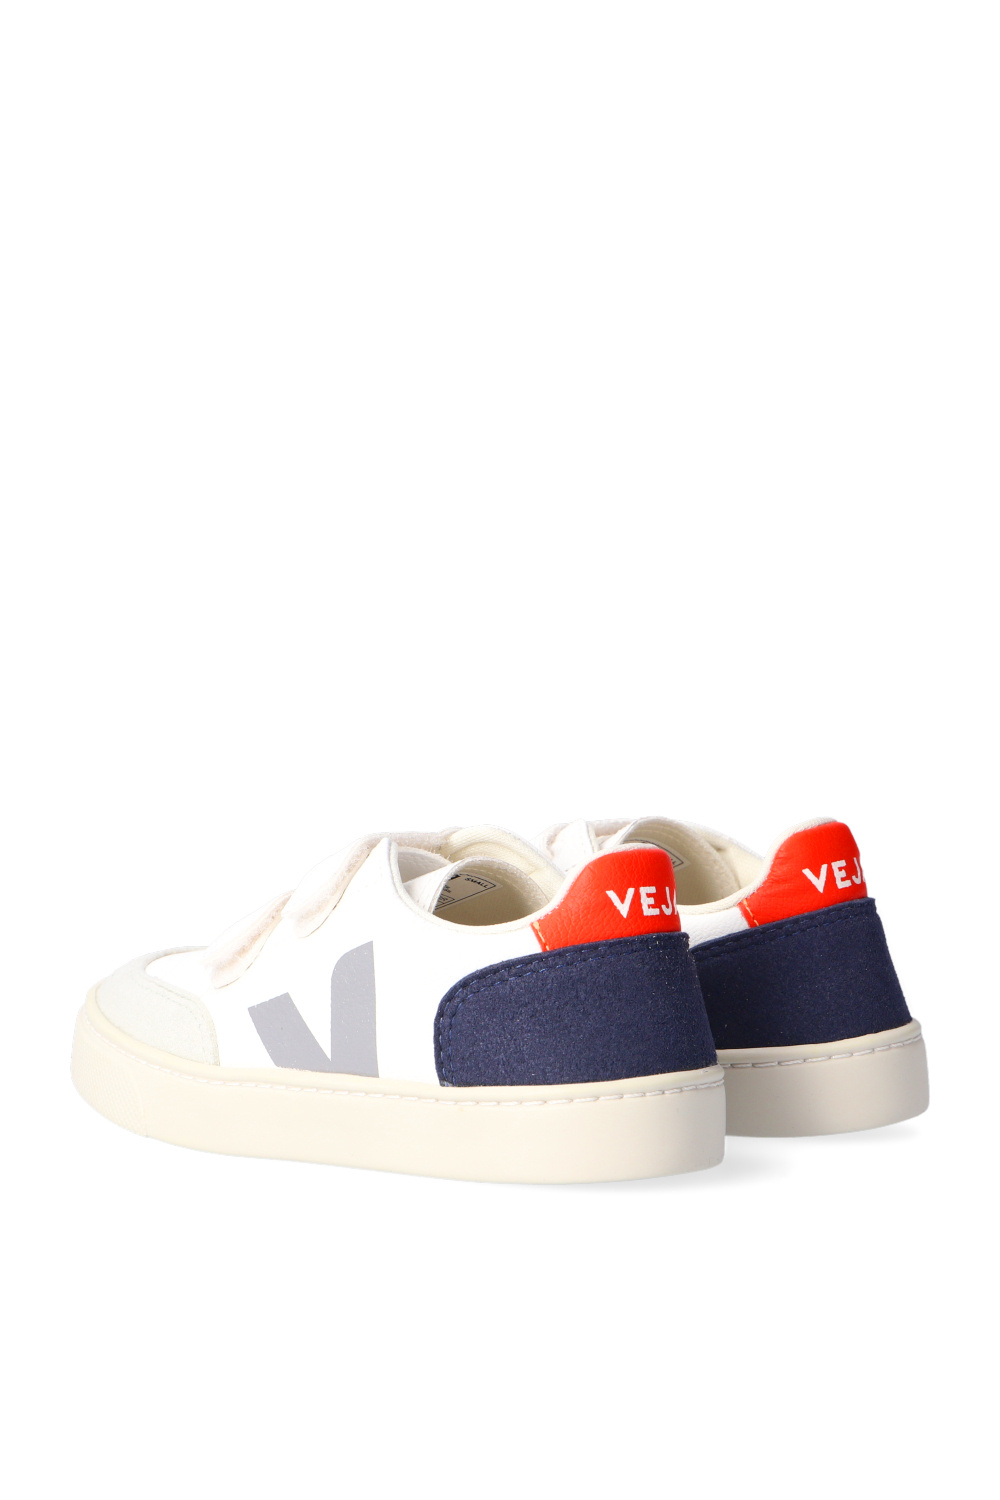 Veja Kids ‘V-12’ sneakers